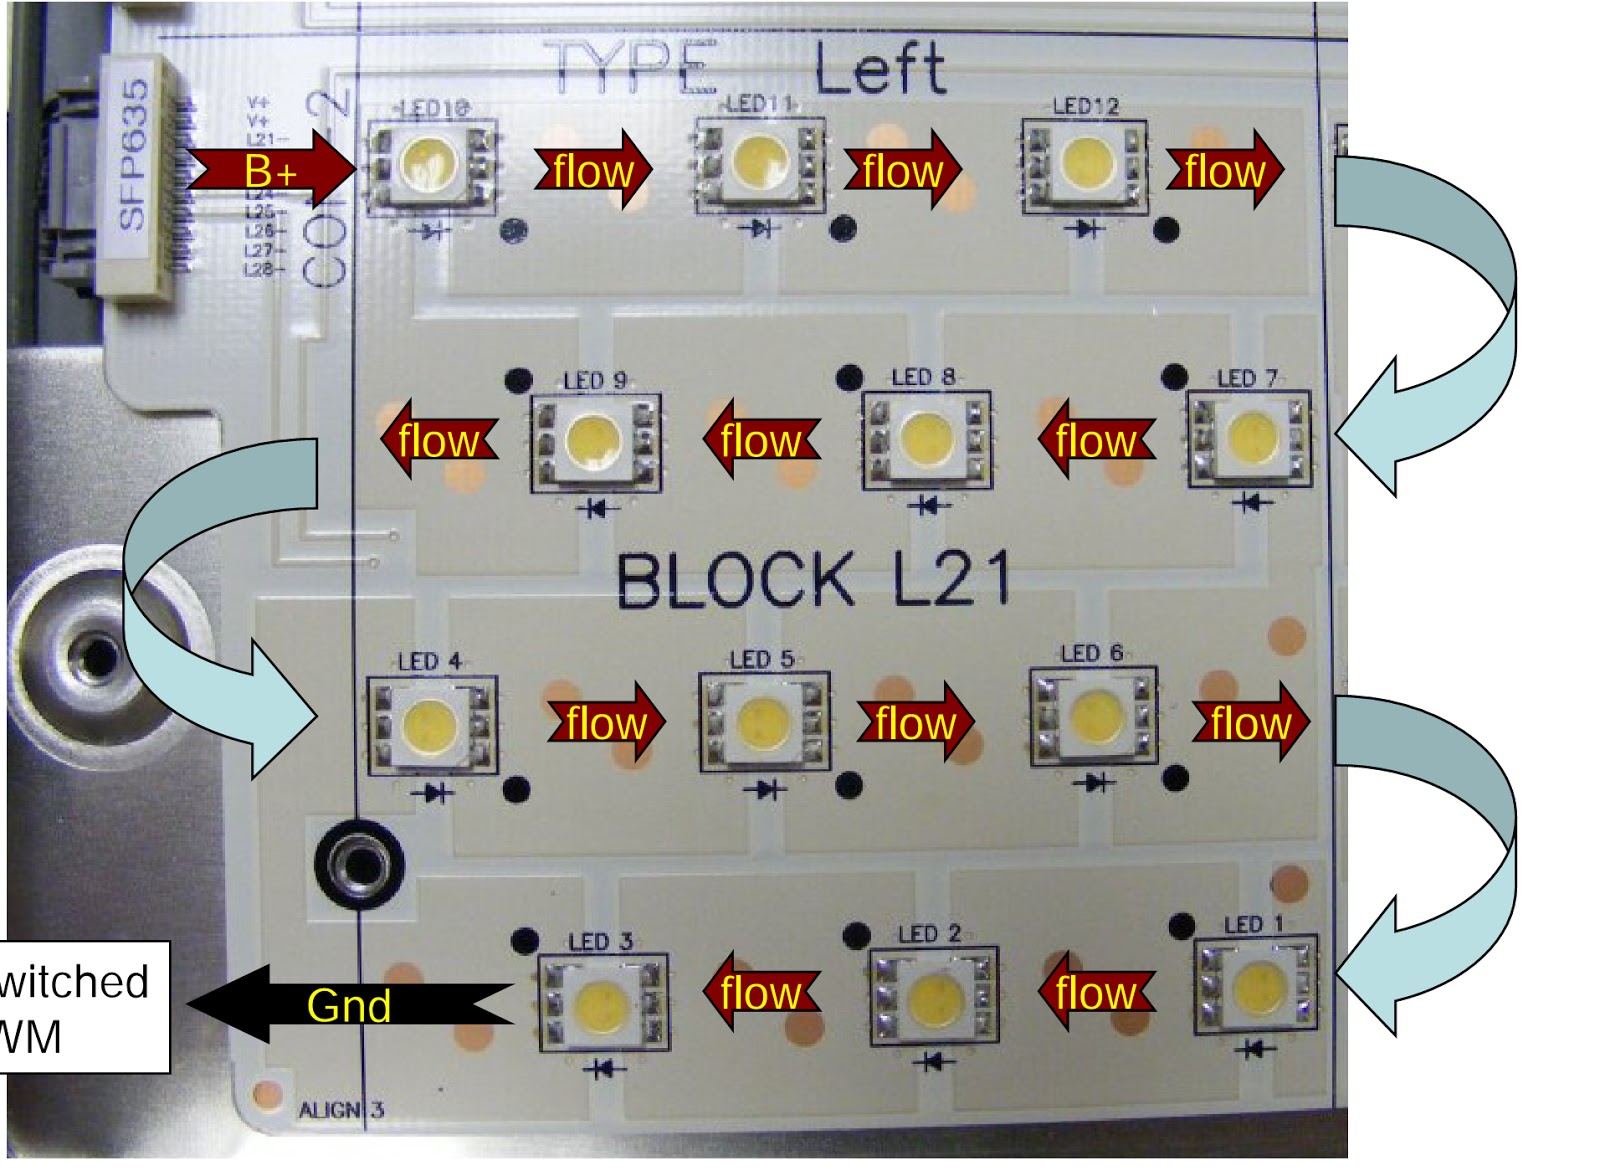 Electro help: LG 47LG90 LED LCD TV - INVERTER - LED BACK-LIGHTING